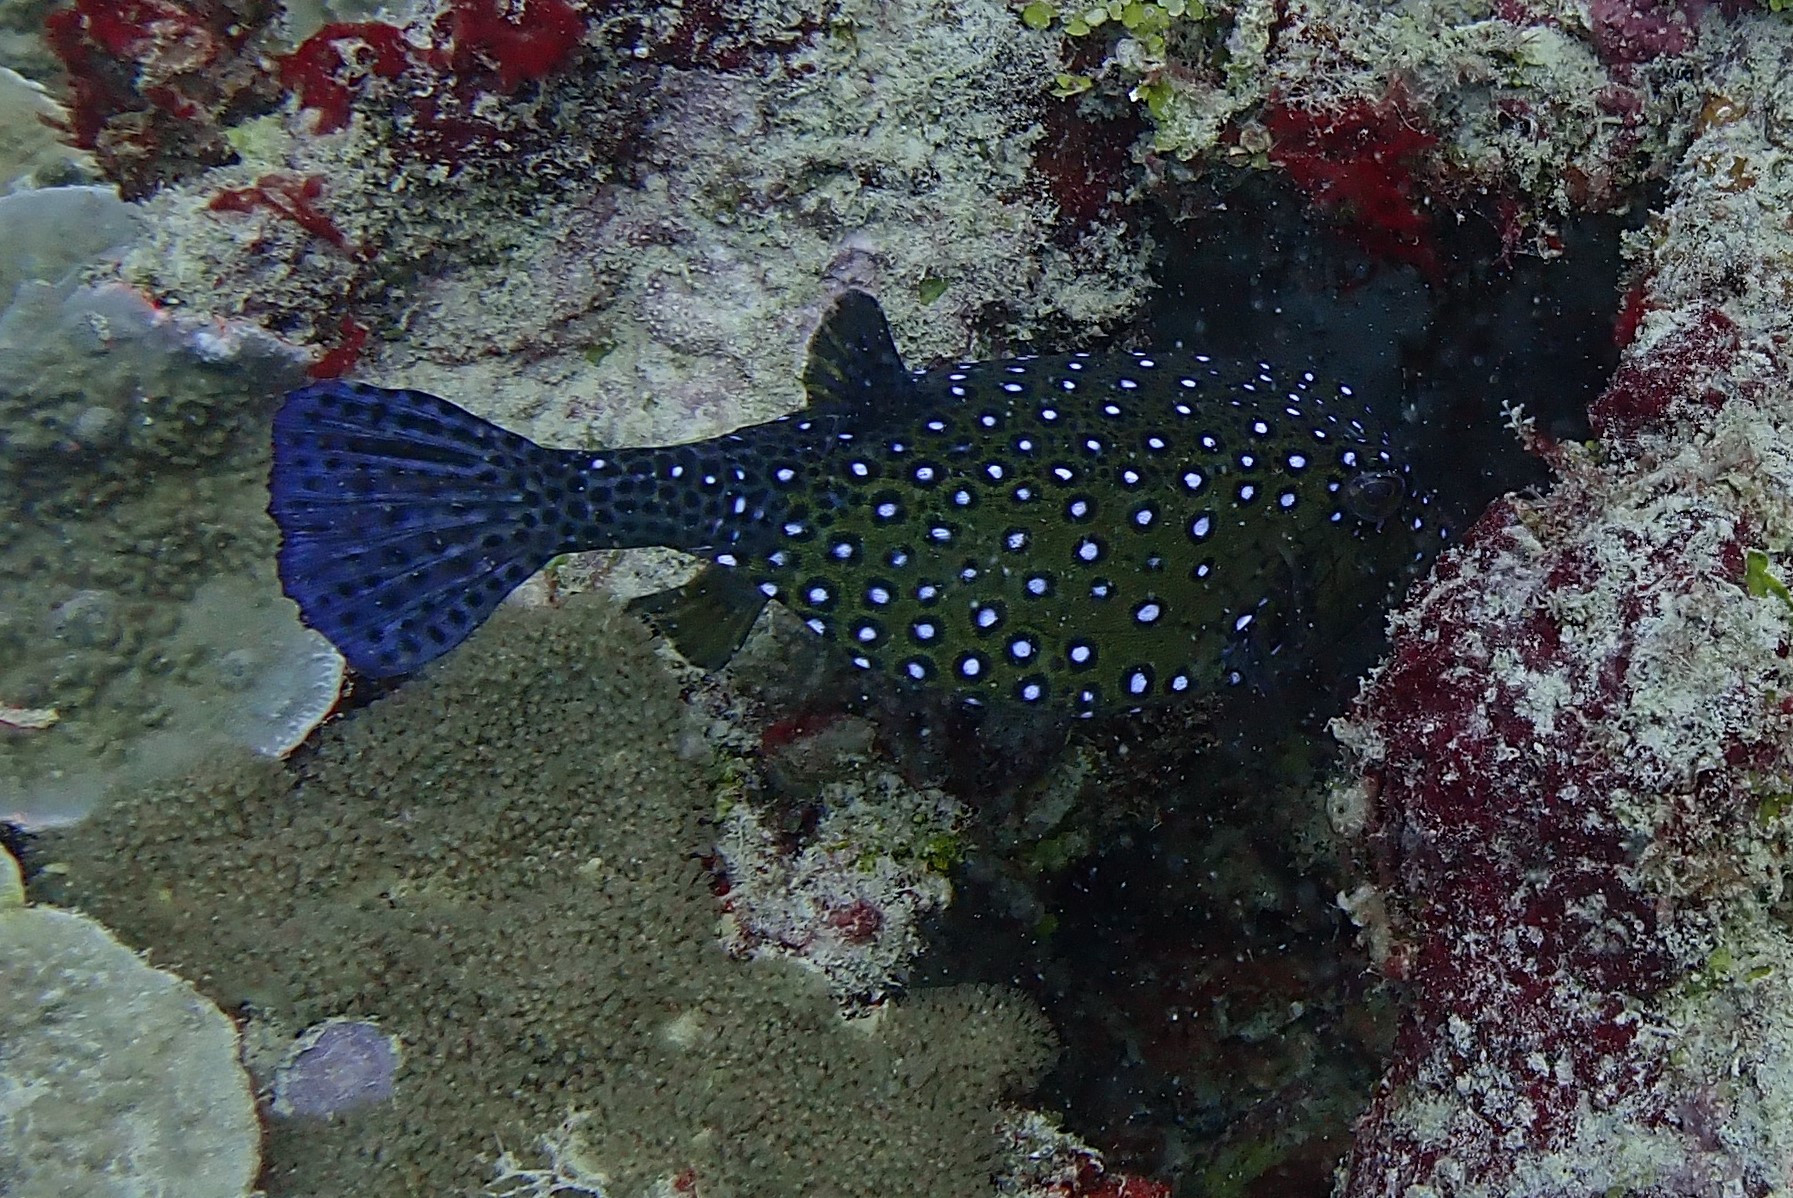 Spotted boxfish<br/>
Tombant Banamahamay